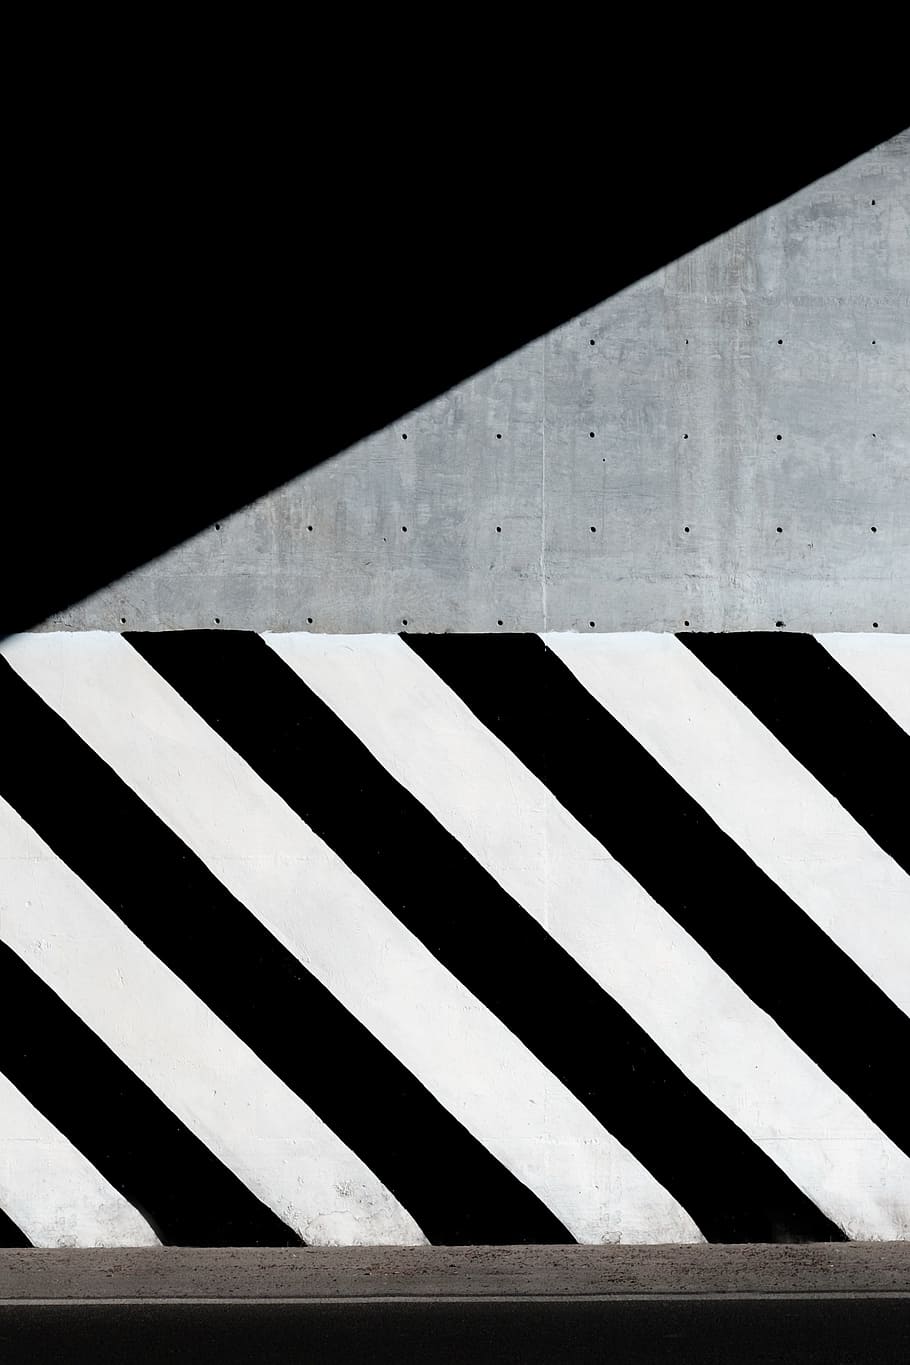 negro, blanco, concreto, pintura, sombra, pared, ciudad, urbano, carretera, rayado